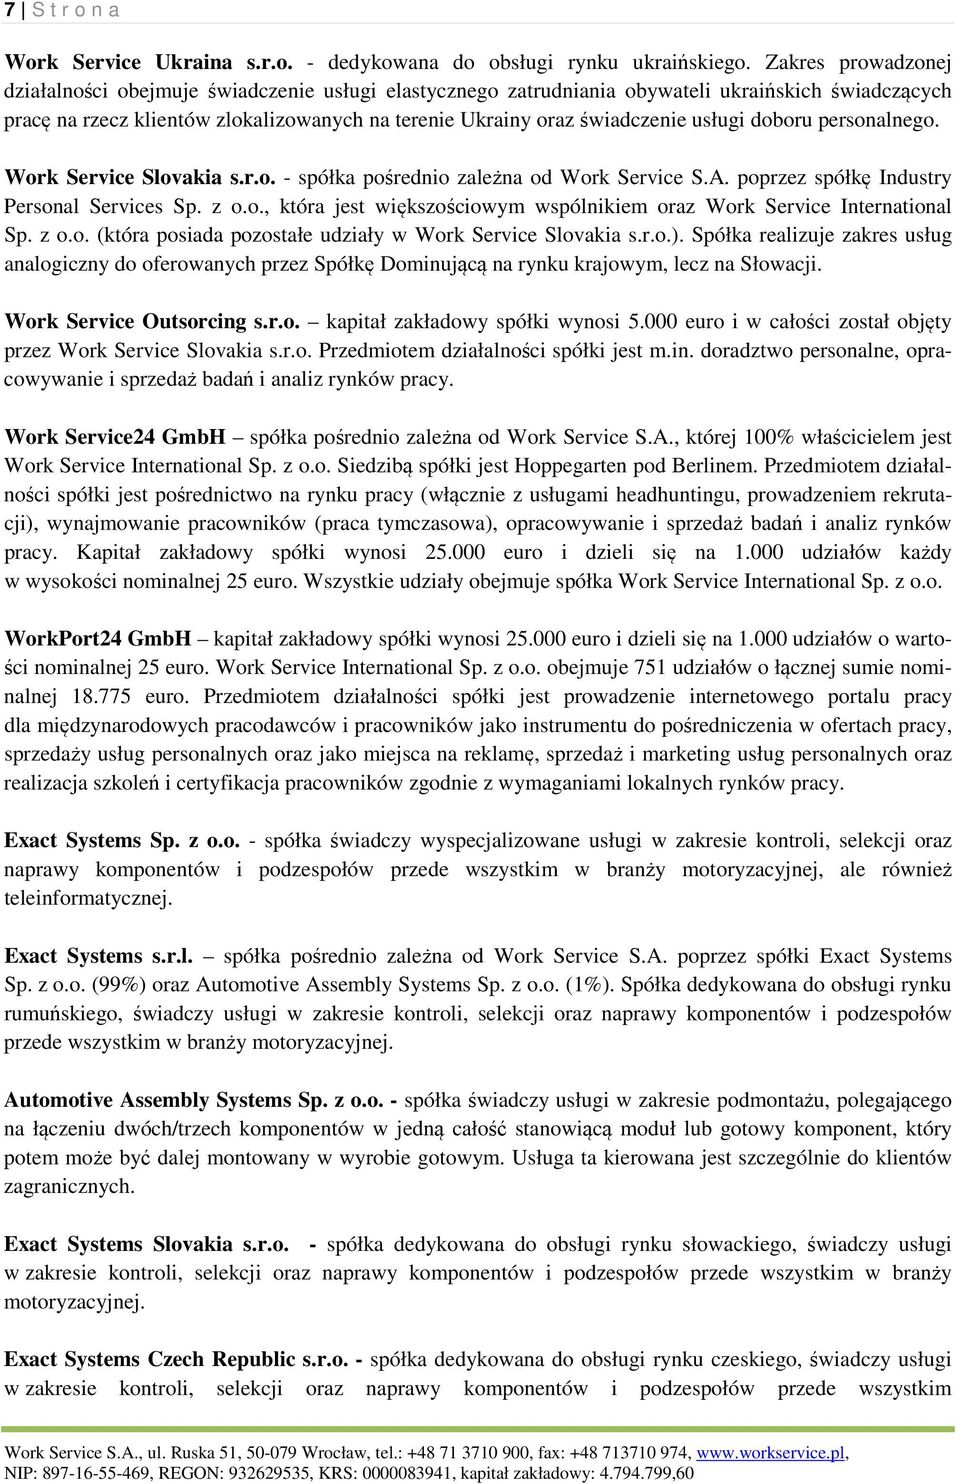 usługi doboru personalnego. Work Service Slovakia s.r.o. - spółka pośrednio zależna od Work Service S.A. poprzez spółkę Industry Personal Services Sp. z o.o., która jest większościowym wspólnikiem oraz Work Service International Sp.